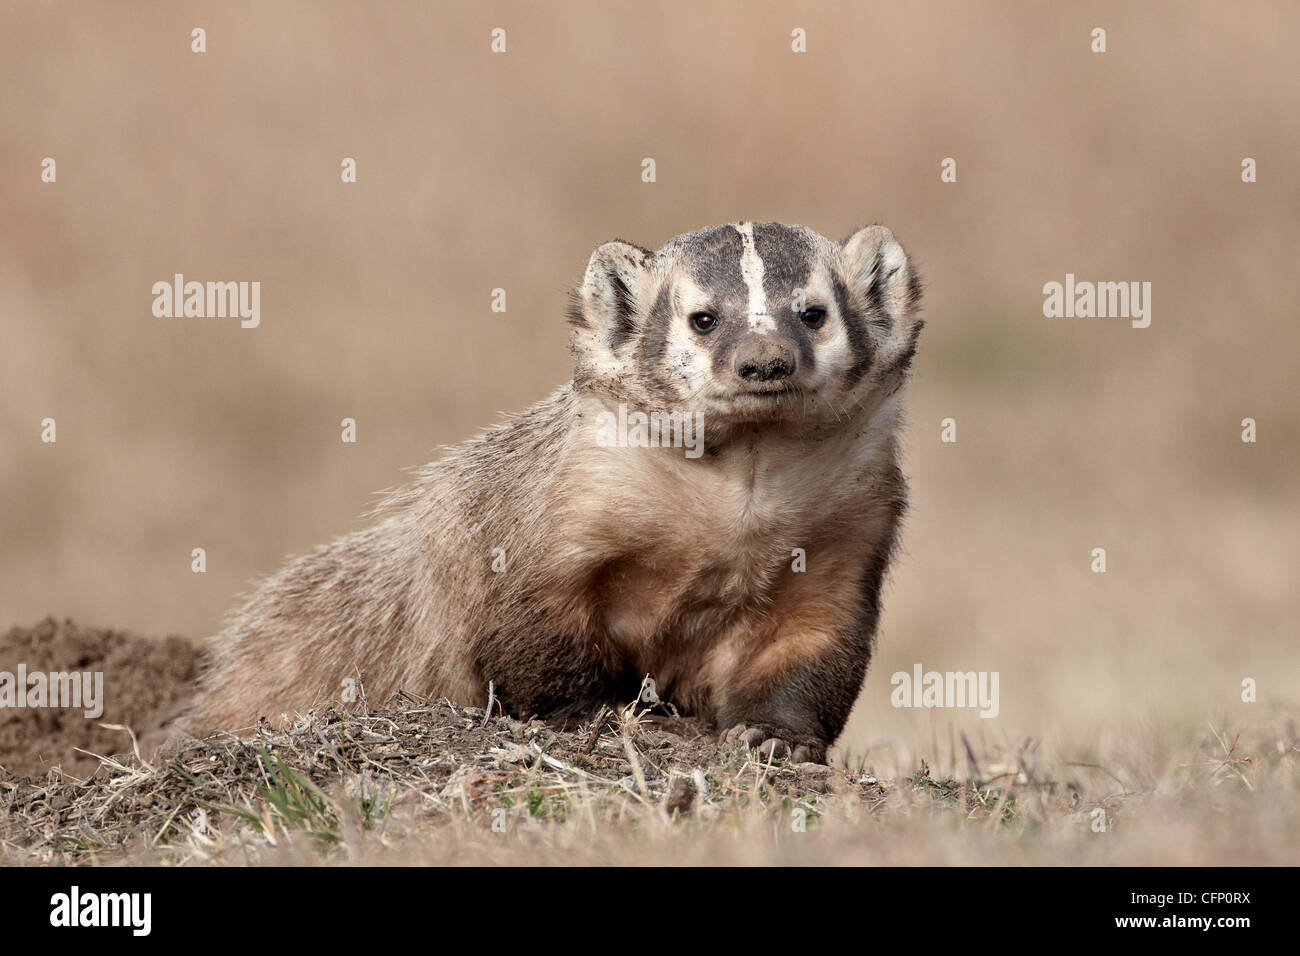 Badger (Taxidea taxus), Custer State Park, il Dakota del Sud, Stati Uniti d'America, America del Nord Foto Stock